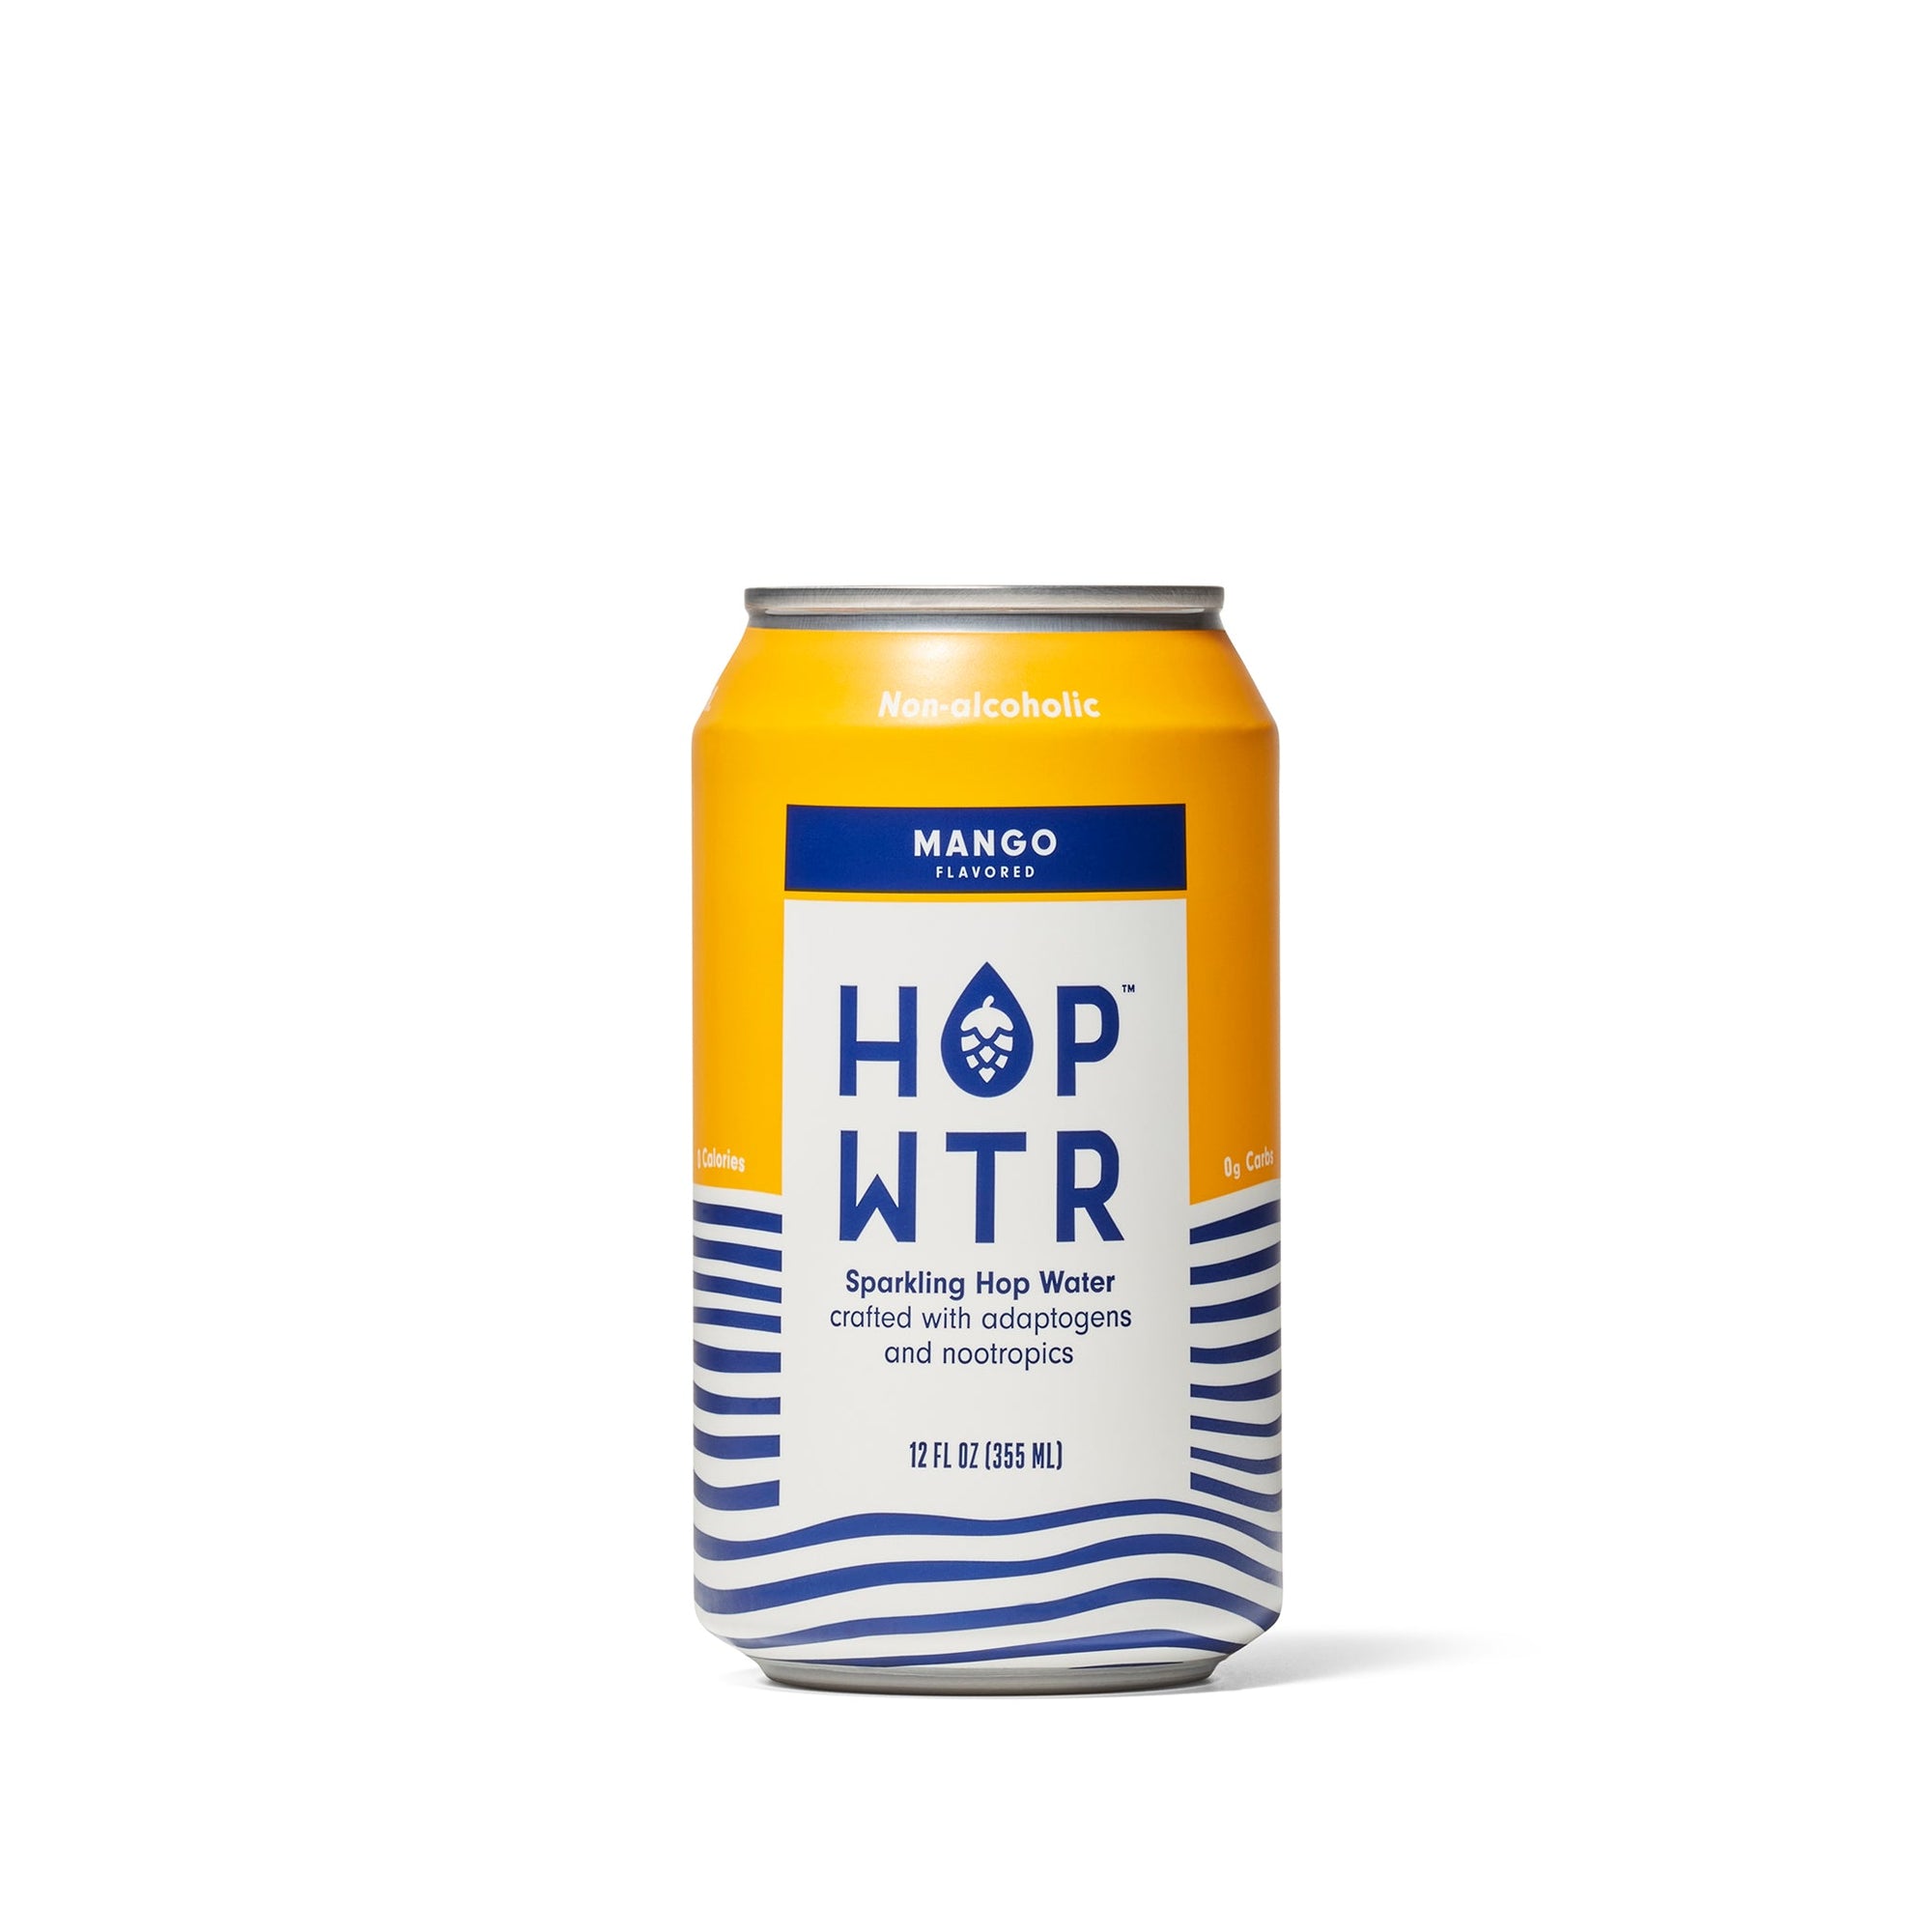 HOP WTR - Mango - Non-Alcoholic Sparkling Hop Water - 6 Pack - Boisson